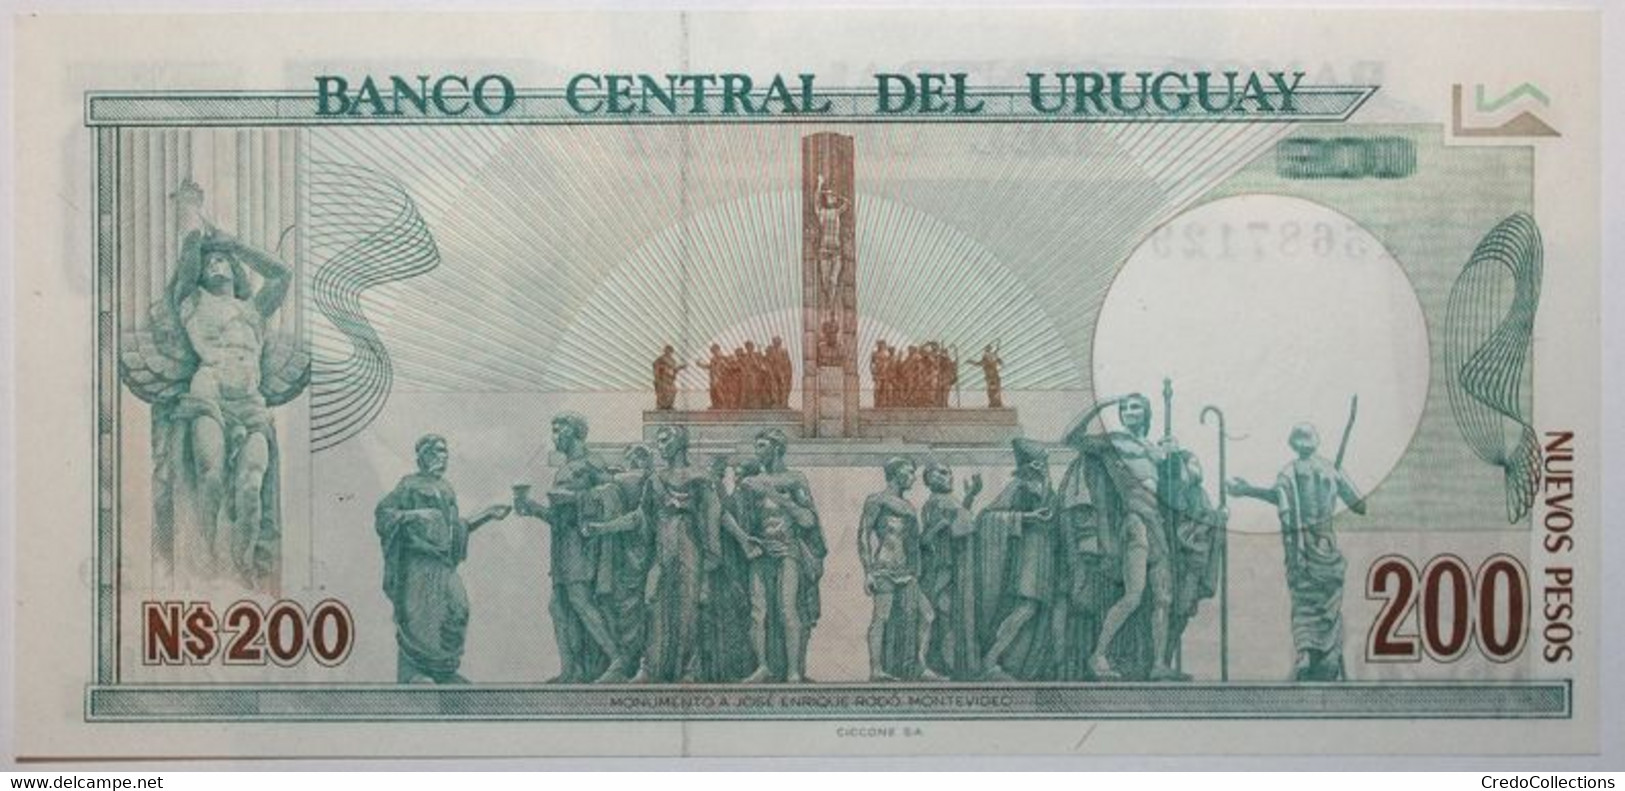 Uruguay - 200 Nuevos Pesos - 1986 - PICK 66a - NEUF - Uruguay